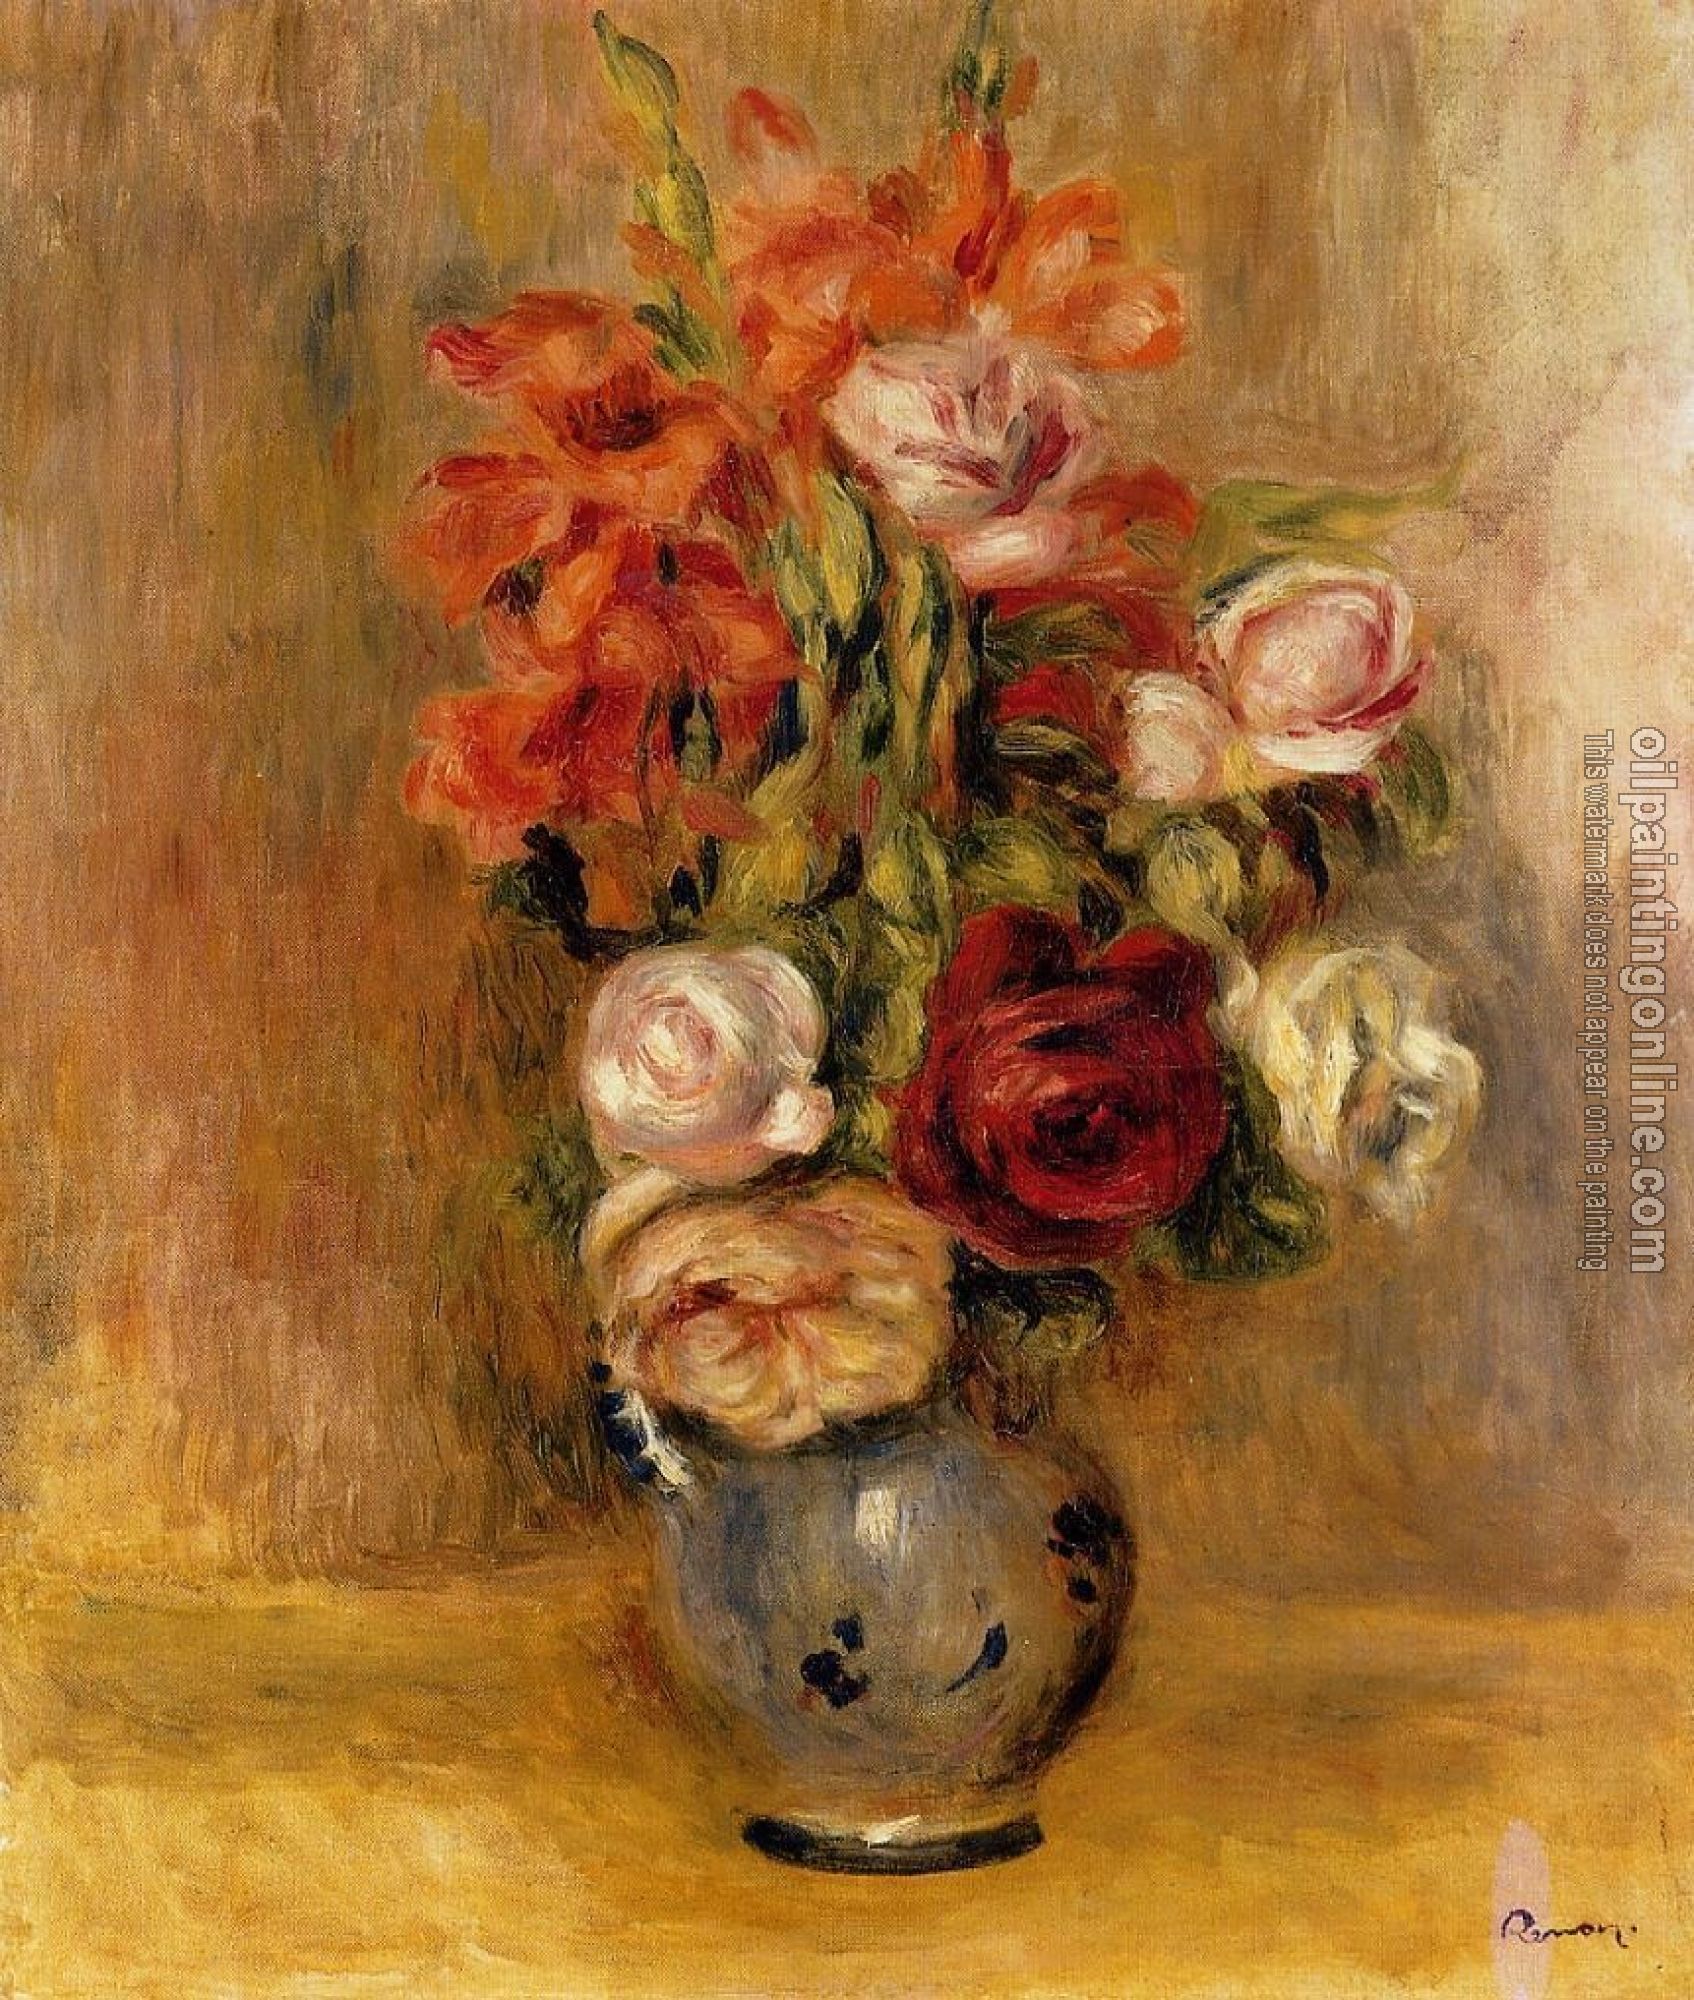 Renoir, Pierre Auguste - Vase of Gladiolas and Roses